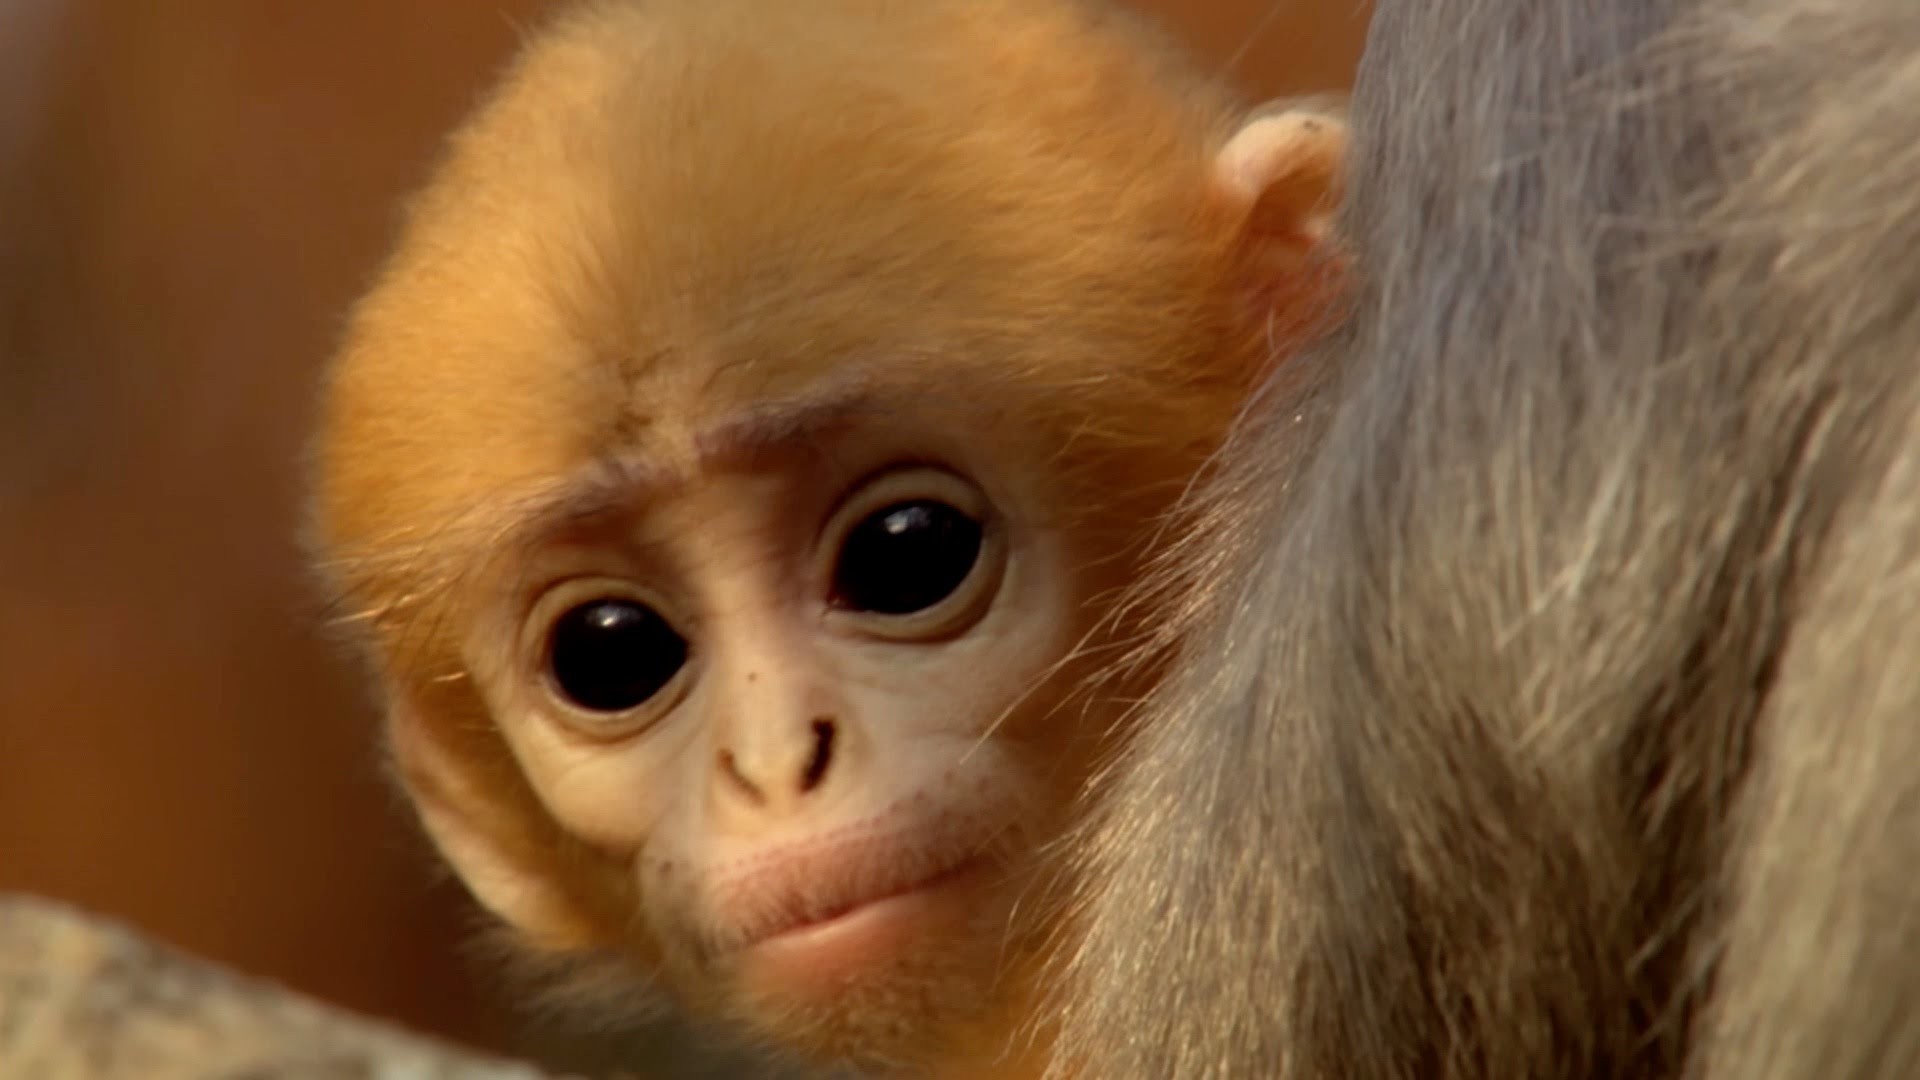 Cute baby monkey has too many babysitters